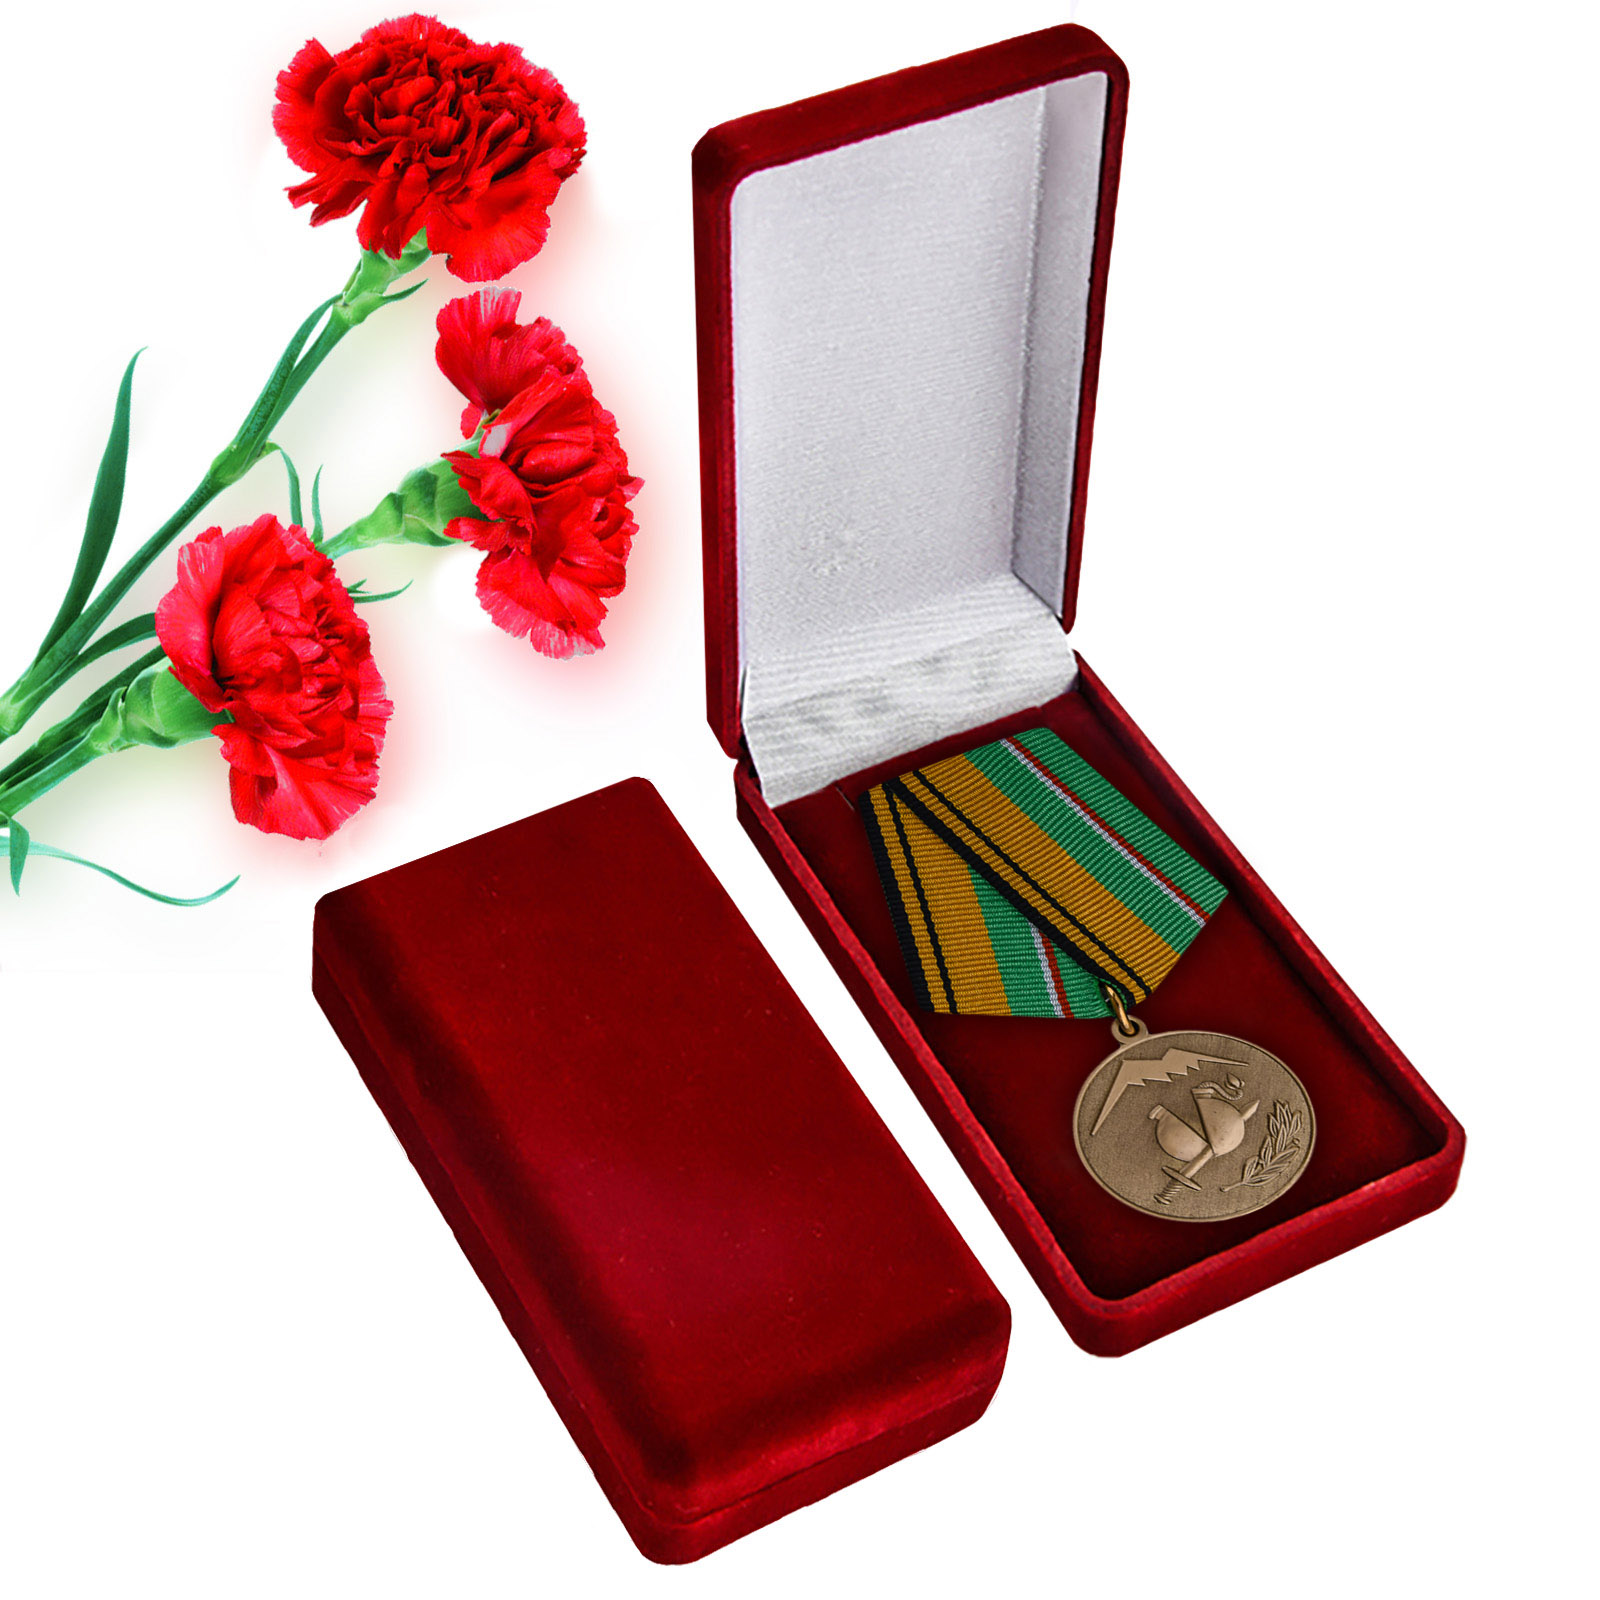 Купить медаль Участнику разминирования в Чеченской Республике и Республике Ингушетия МО России в подарок